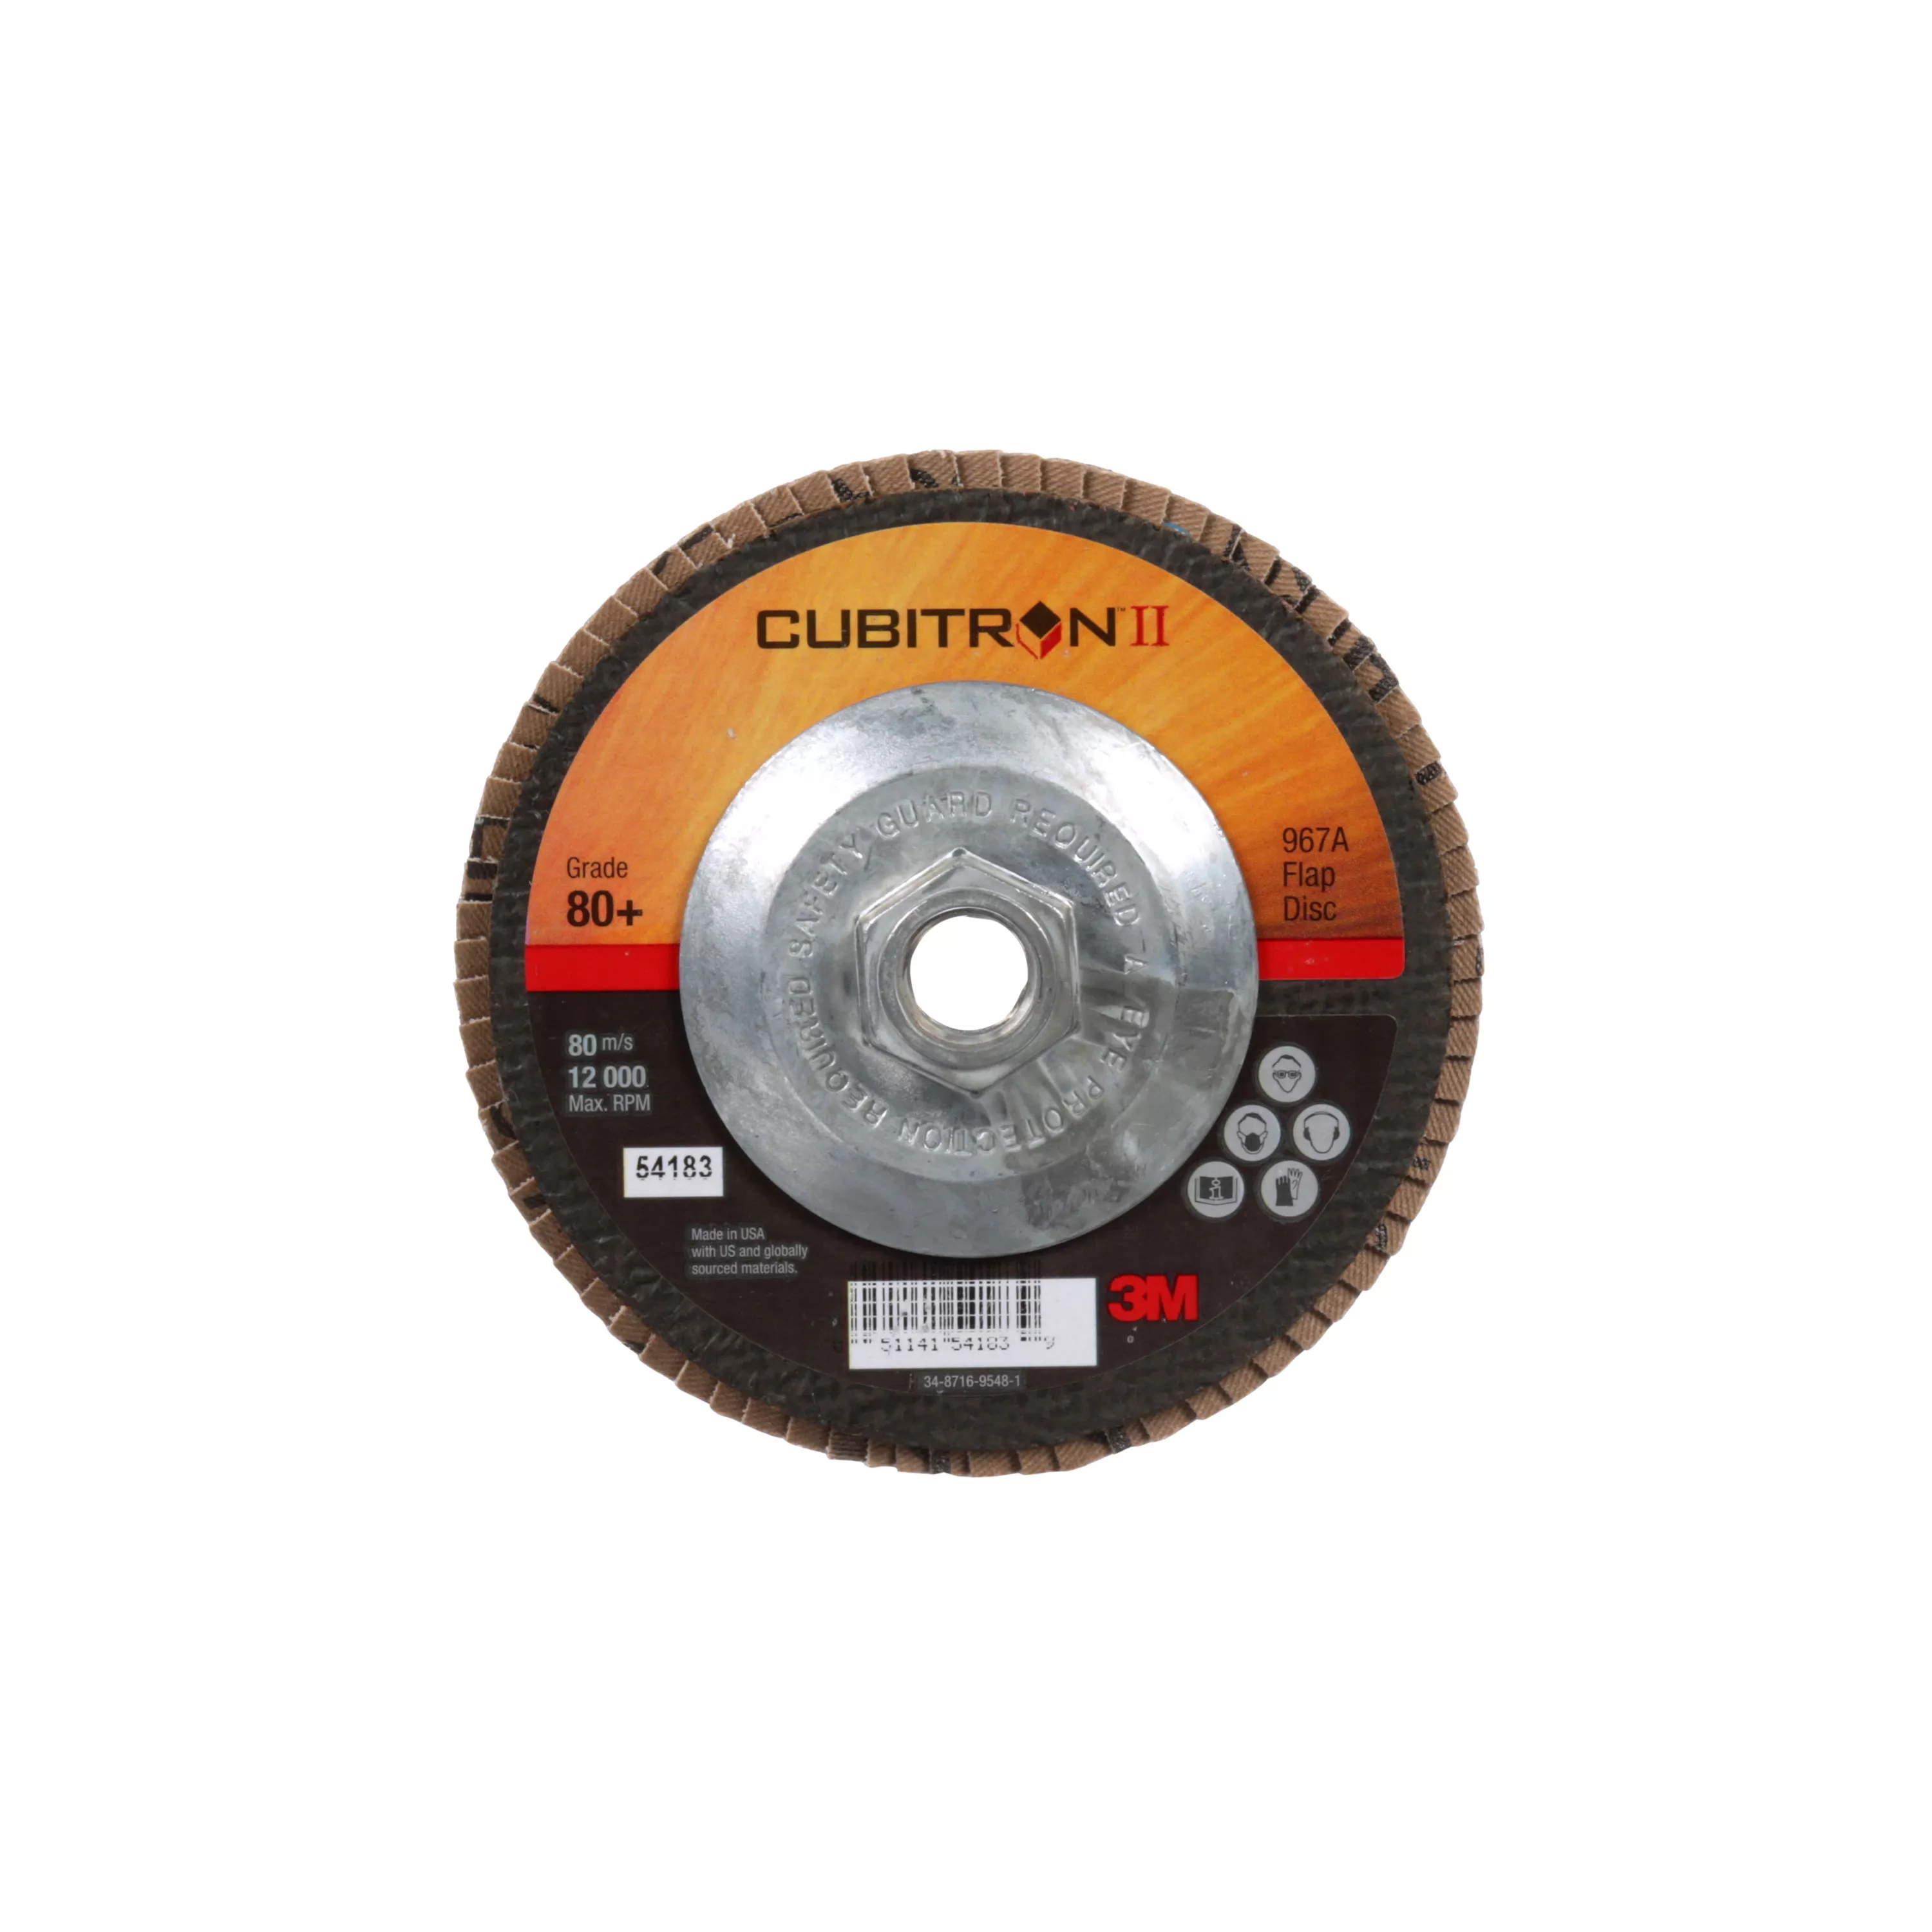 3M™ Cubitron™ II Flap Disc 967A, 80+, T27, 5 in x 5/8